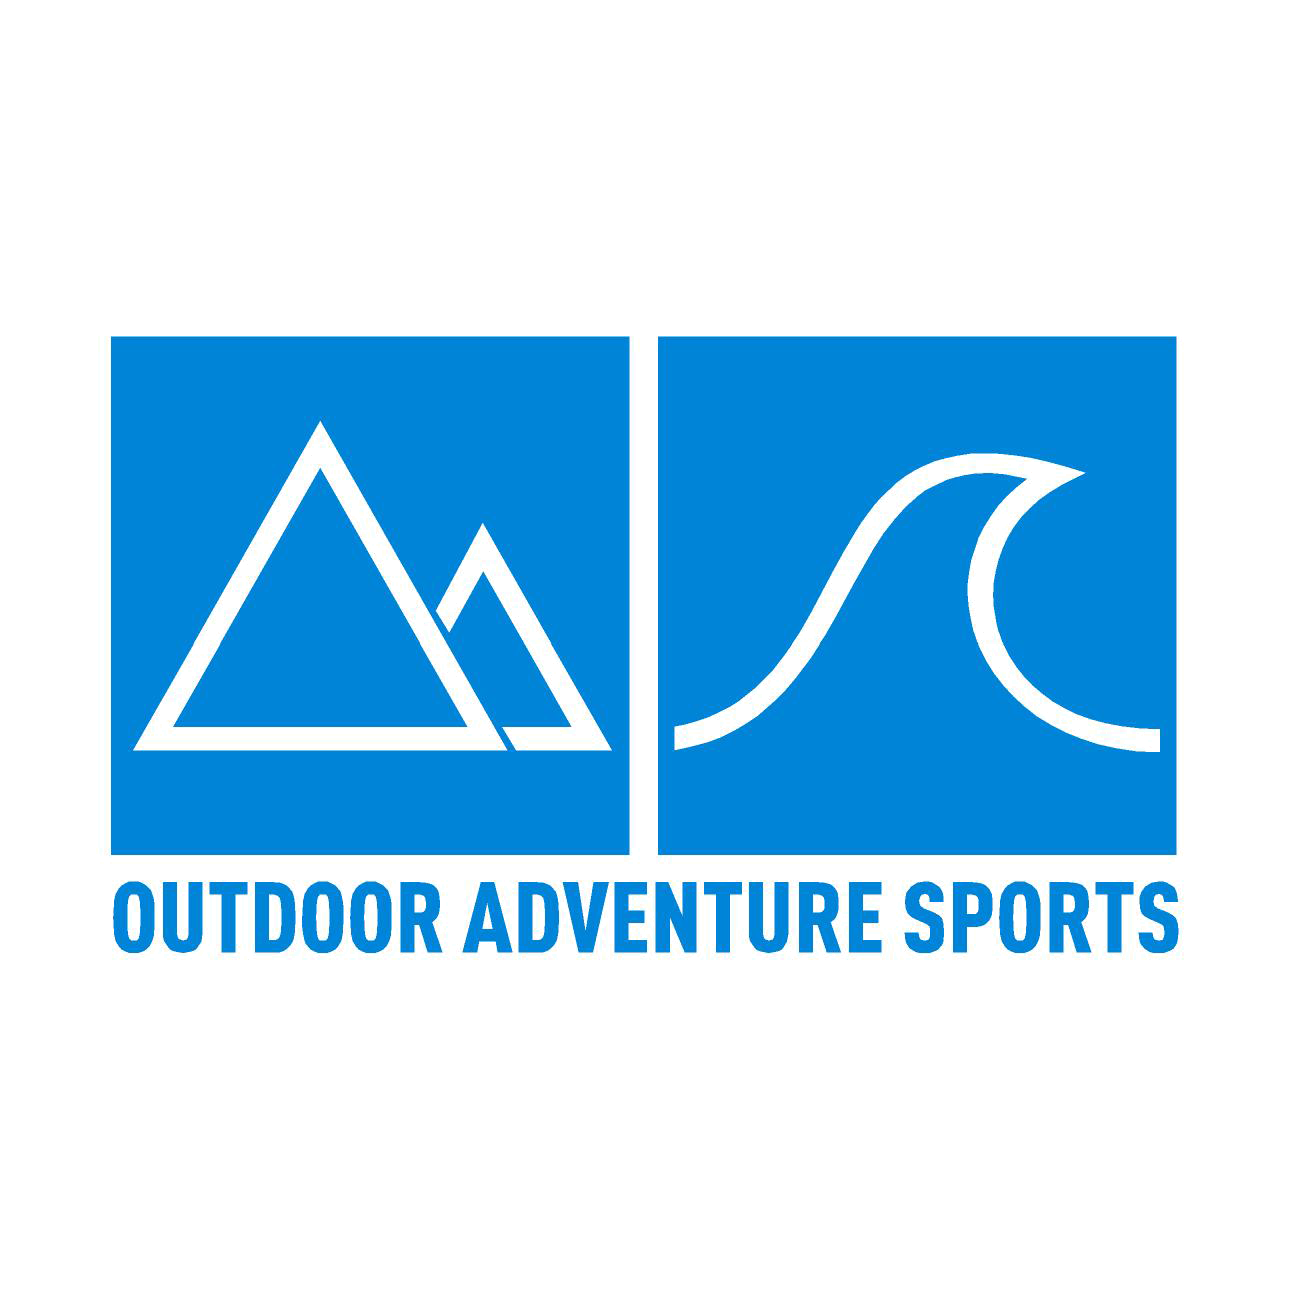 Outdoor Adventure Sports ofrece una amplia gama de deportes de aventura en Mallorca